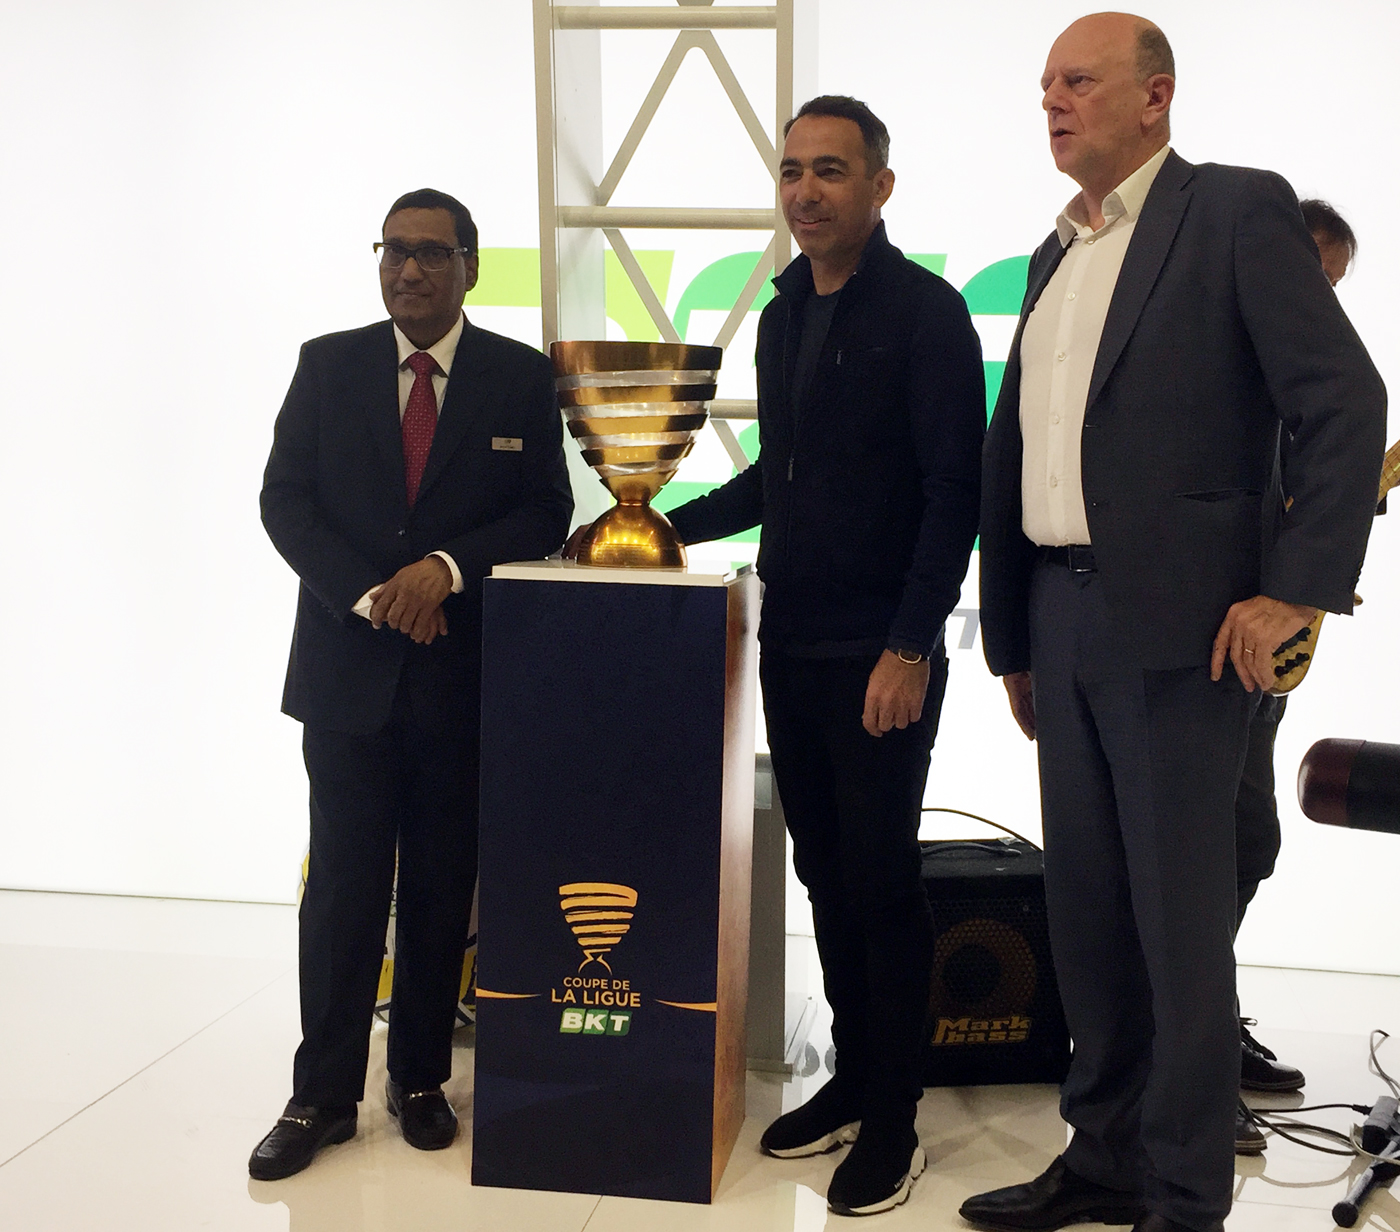 Arvin Poddar (izq.), CEO de BKT, junto al campeon del mundo Youri Djorkaeff (centro), y el representante de la LFP francesa...